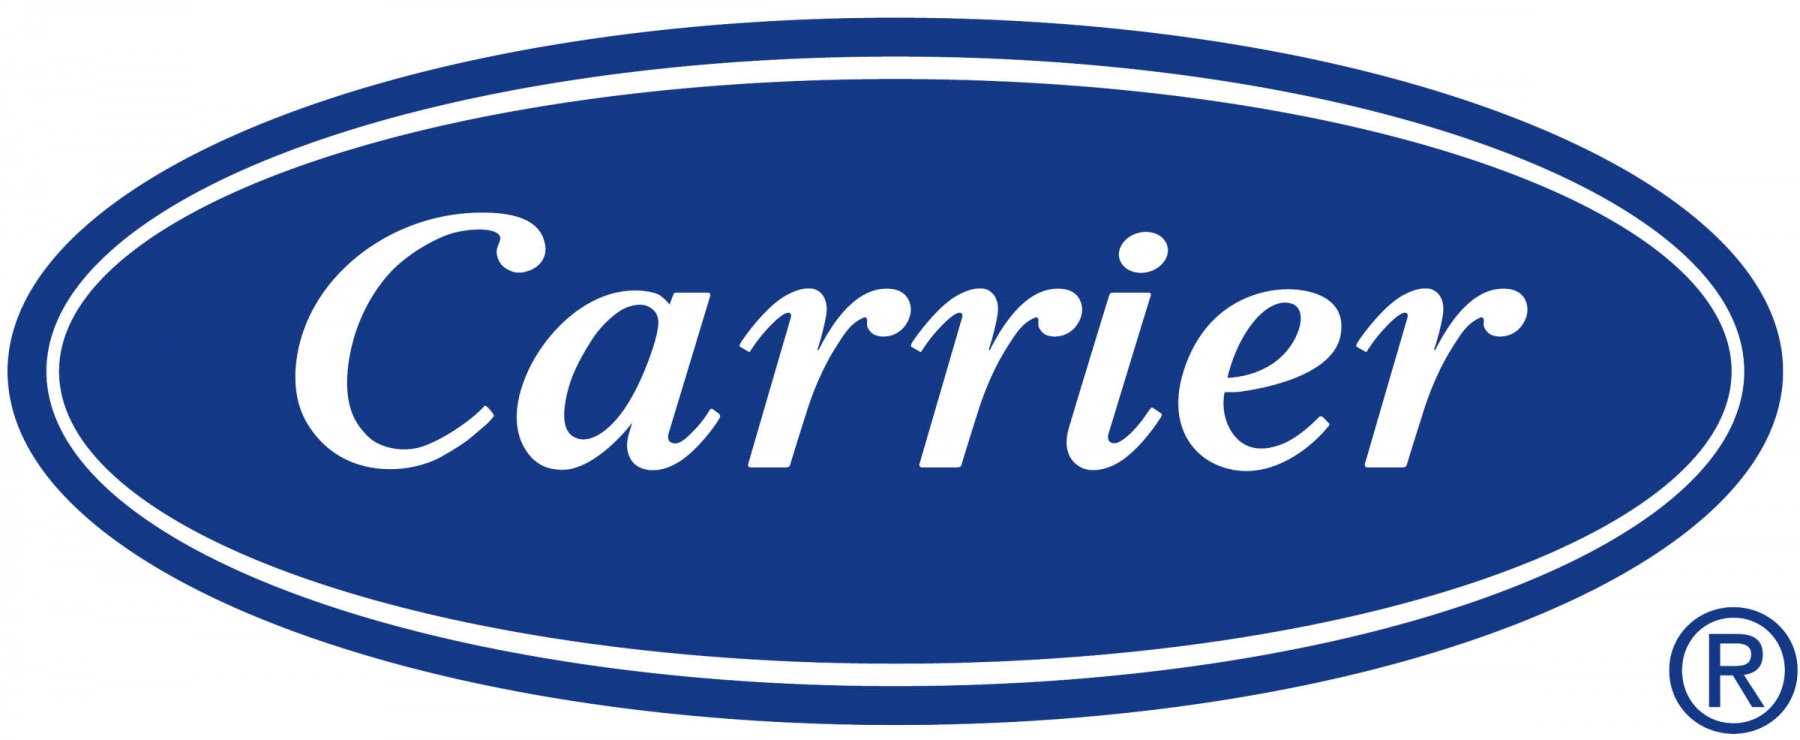 logo_carrier_jpg.jpg